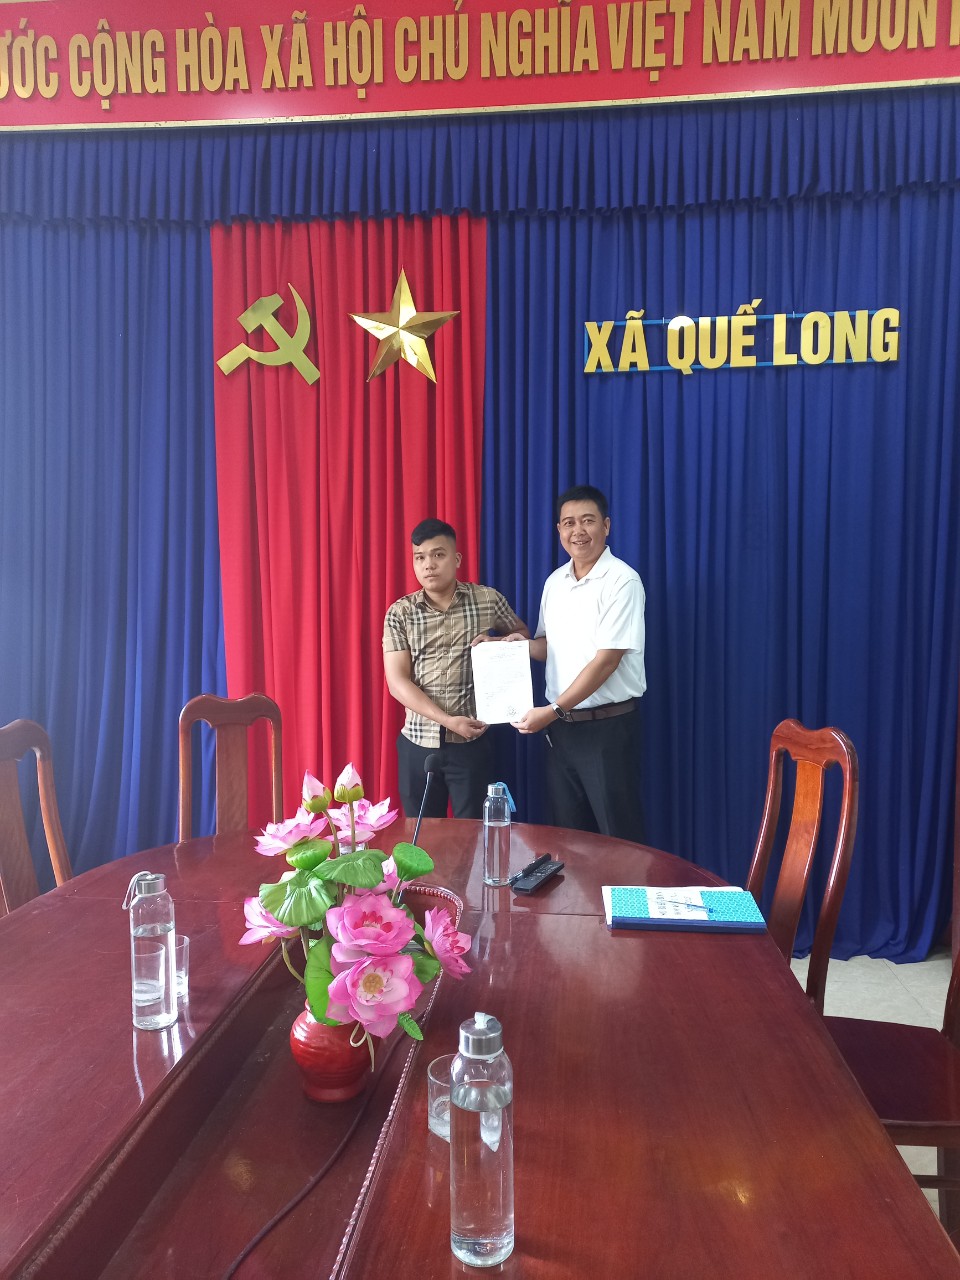 UBND xã Quế Long công bố Quyết định bổ nhiệm Phó chỉ huy trưởng BCH quân sự xã